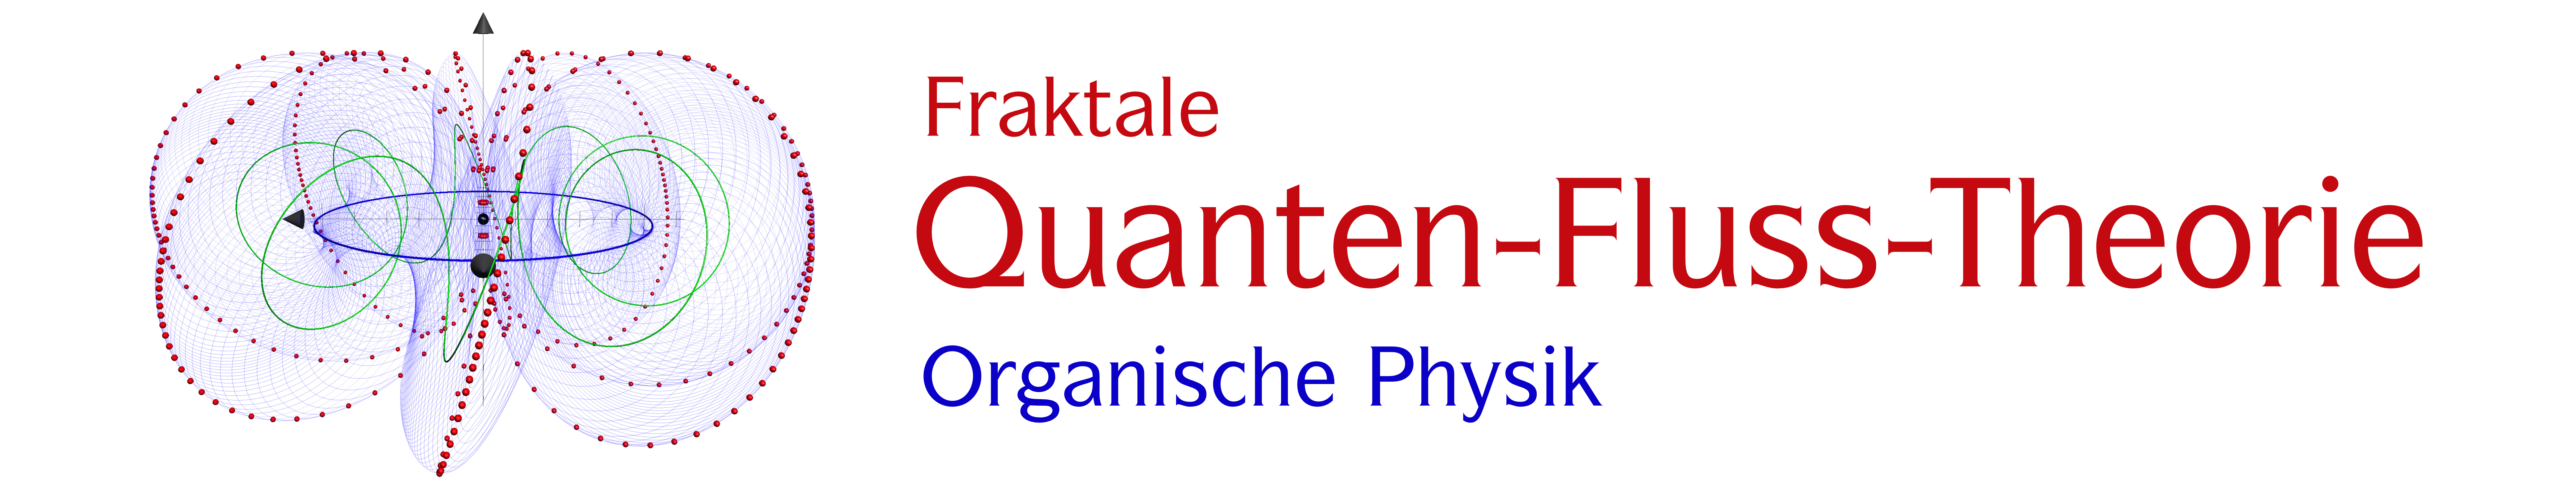 Fraktale Quanten-Fluss-Theorie, Organische Physik